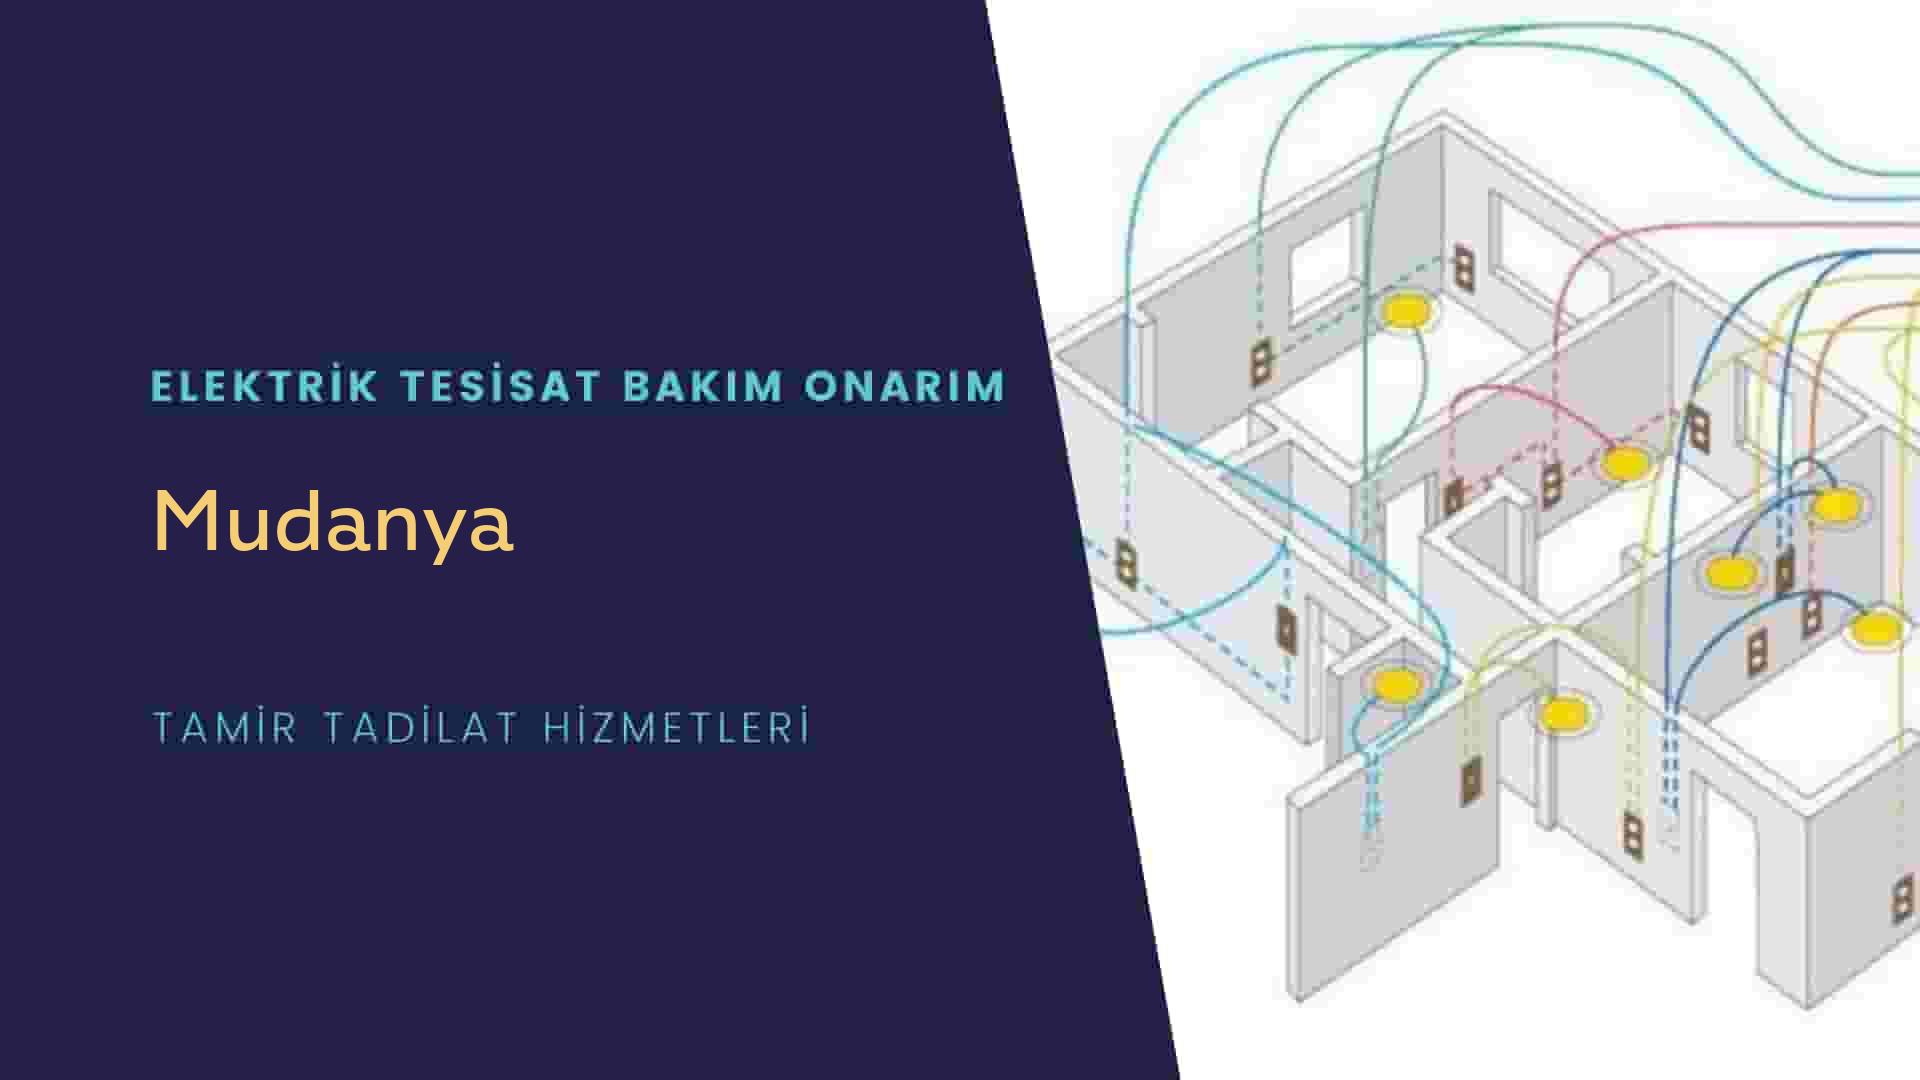 Mudanya'da elektrik tesisatı ustalarımı arıyorsunuz doğru adrestenizi Mudanya elektrik tesisatı ustalarımız 7/24 sizlere hizmet vermekten mutluluk duyar.